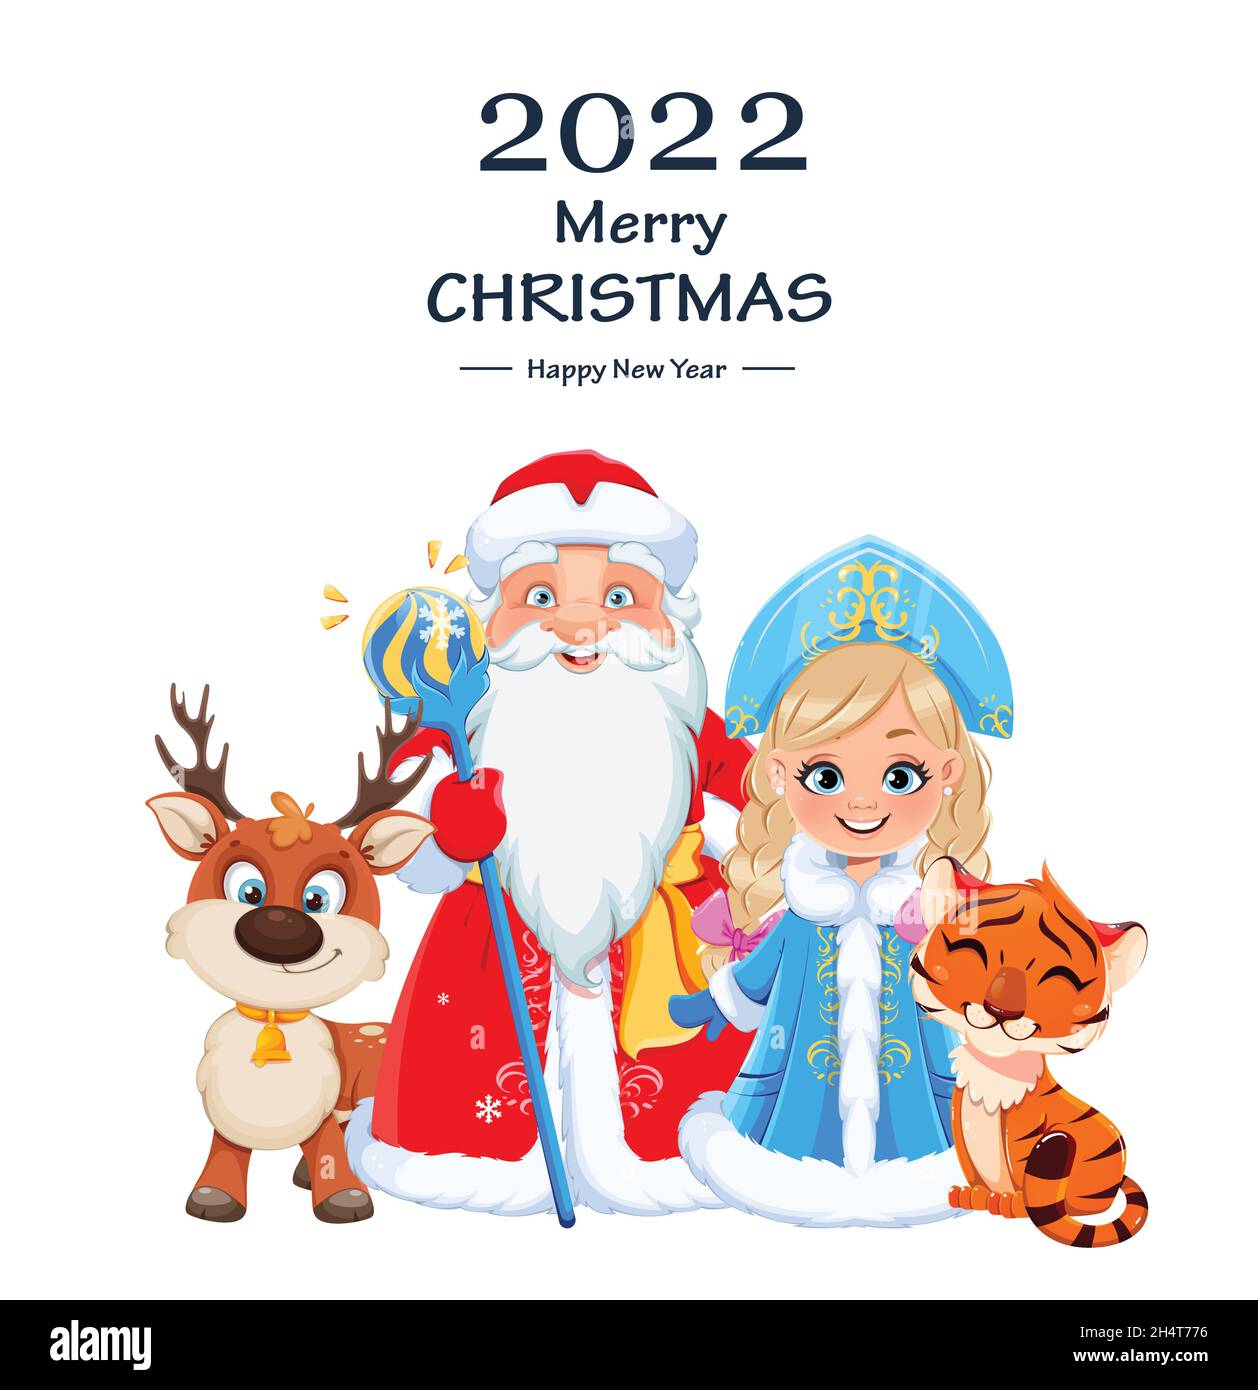 Frohes neues Jahr und Frohe Weihnachten. Der russische Vater Frost (Weihnachtsmann) und Snegurochka (Schneewittchen) stehen in der Nähe von Tiger und Hirsch. Niedliche Zeichentrickfigur Stock Vektor